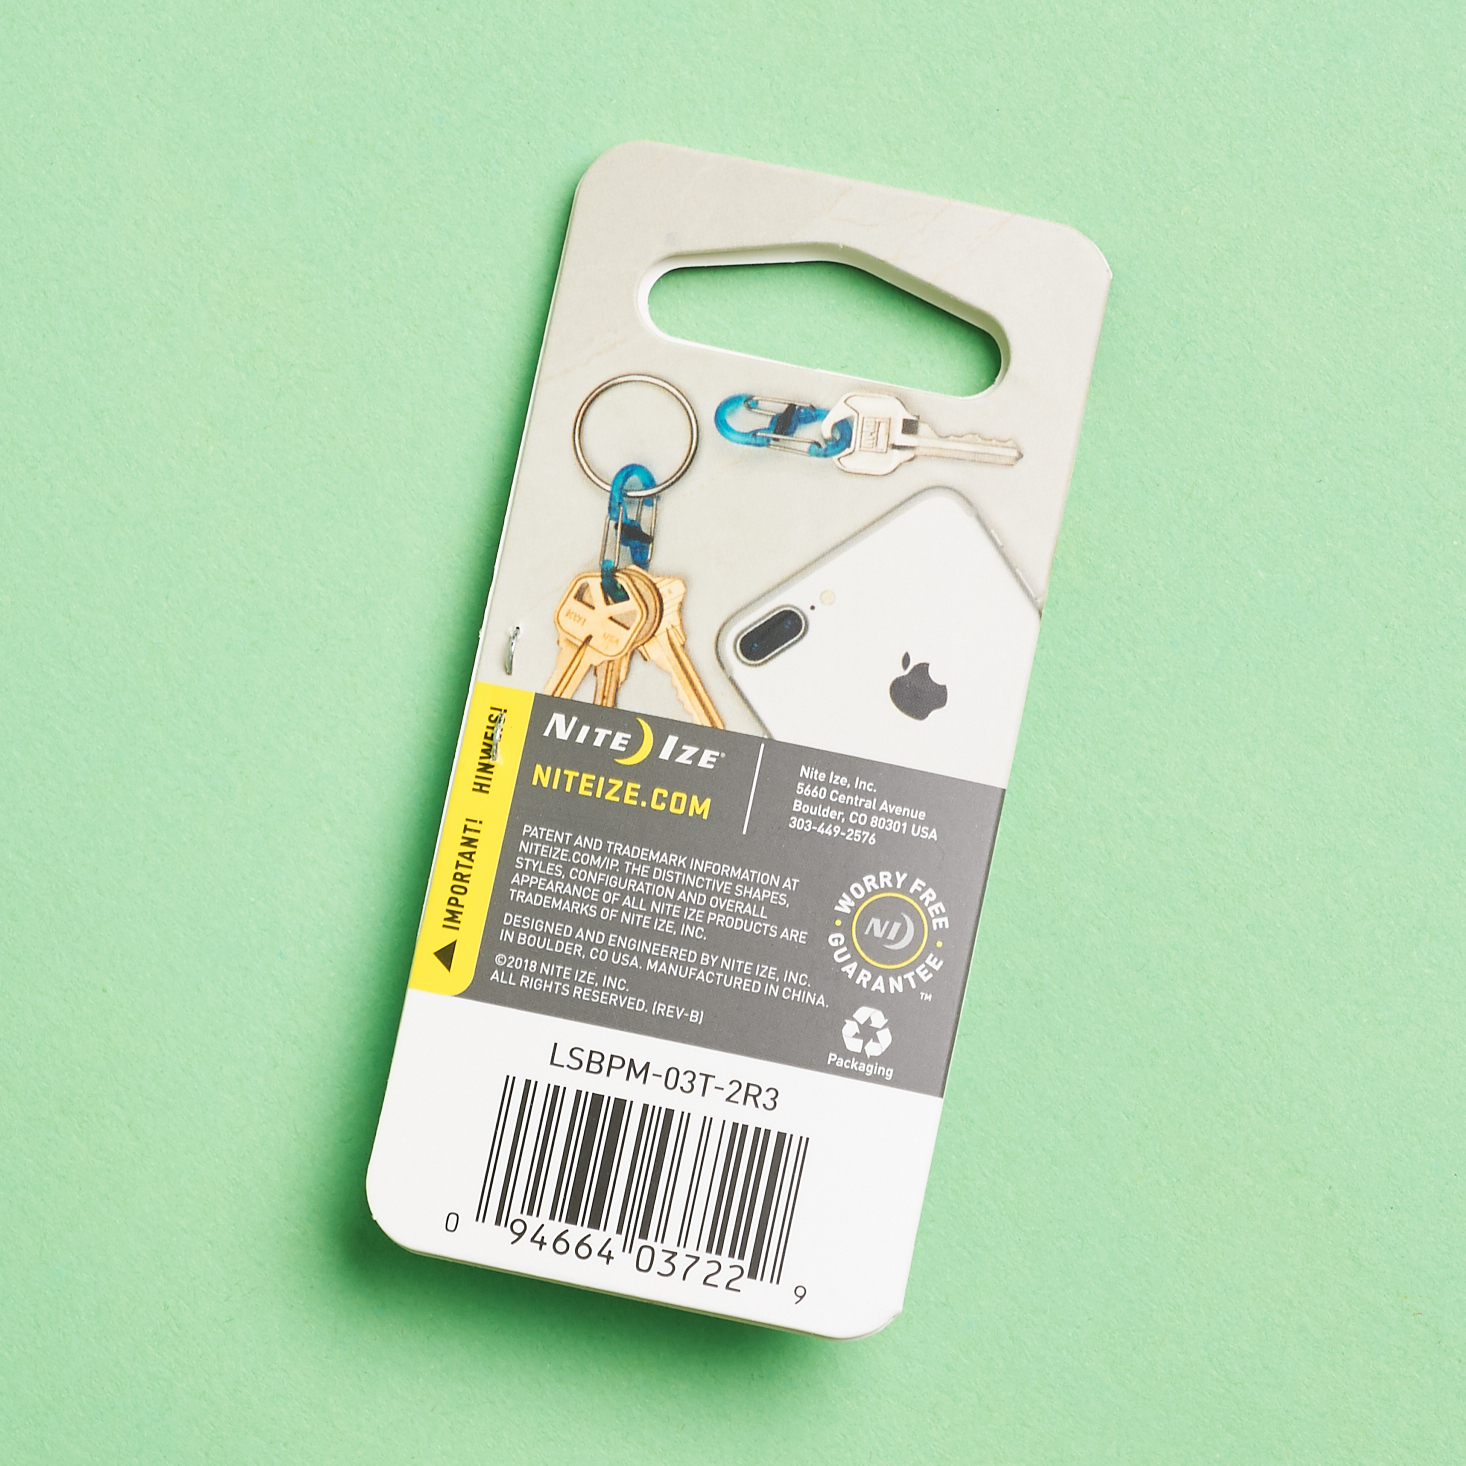 back of Nitelze S-Binder Microlock packaging